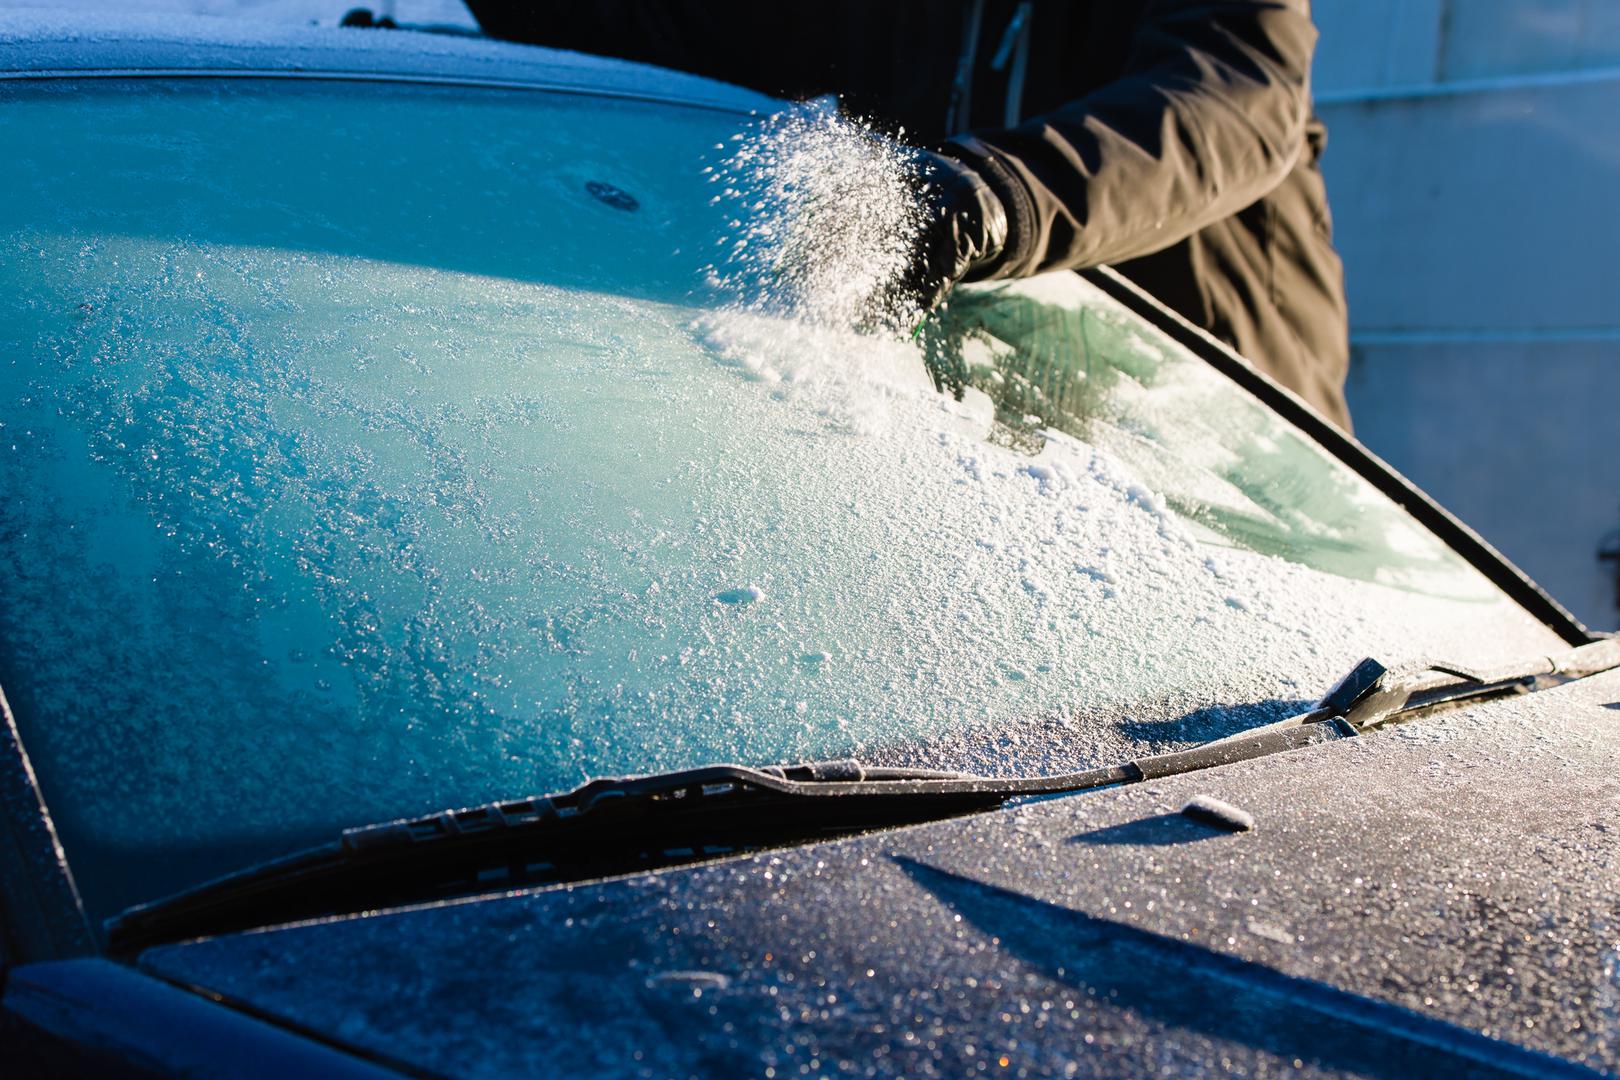 Ljeti zbog visokih temperatura morate paziti što ostavljate u automobilu, a ista je situacija i zimi. Postoje neke stvari koje ne podnose jaku hladnoću i koje nikako ne biste trebali ostaviti u parkiranom automobilu ako nije u garaži u kojoj se temperatura ne spušta ispod ništice.